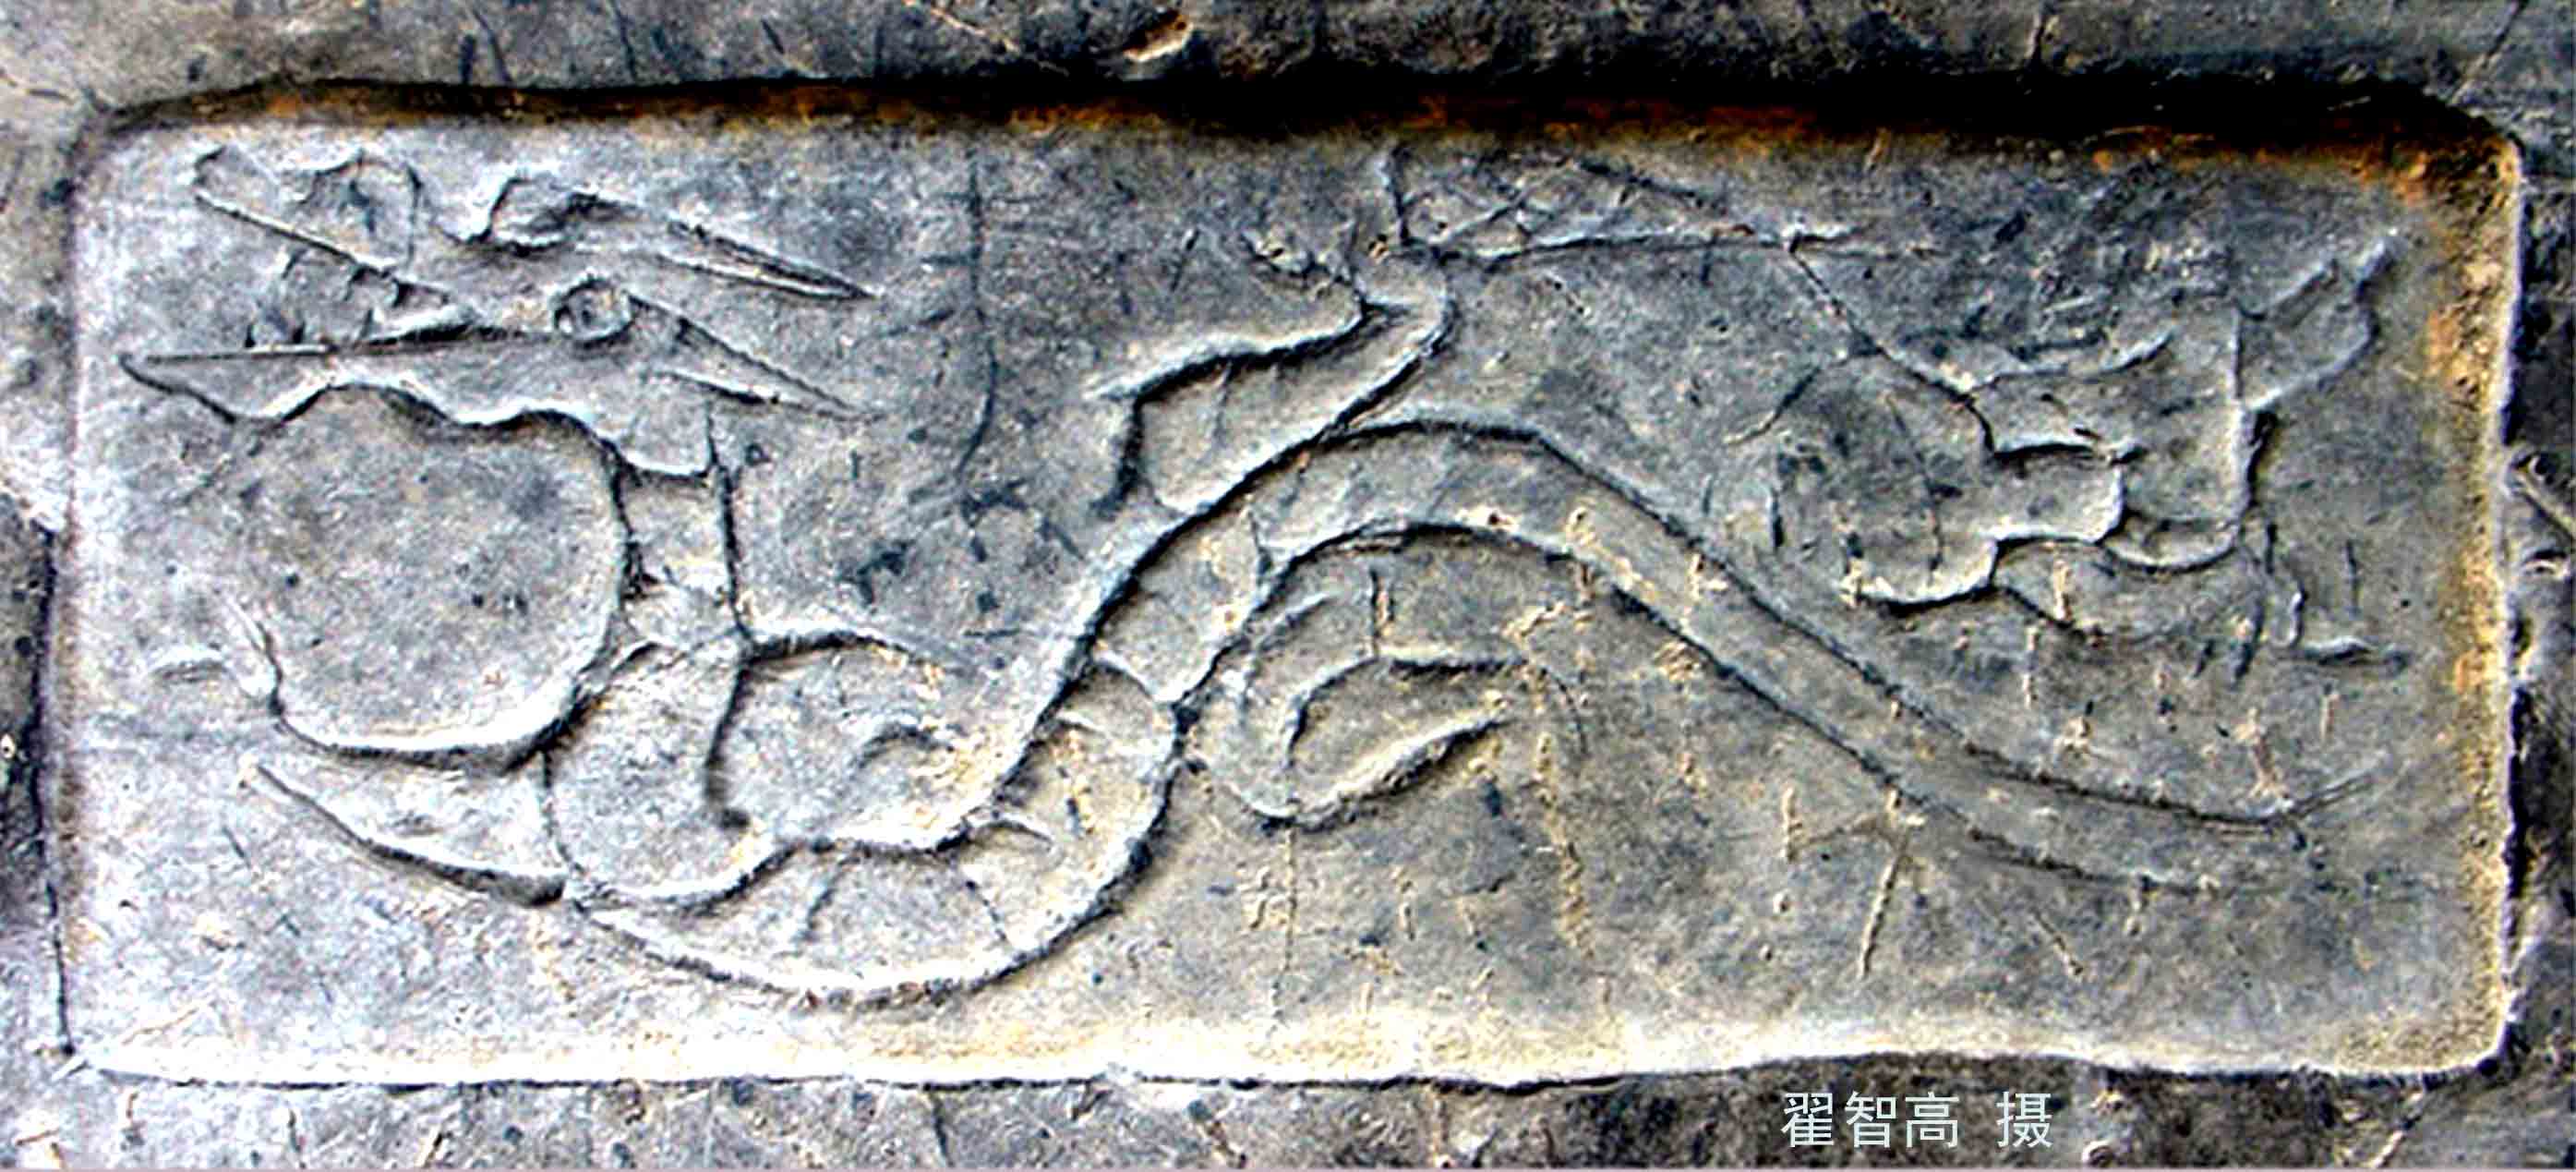 伊川西汉时期空心砖上的人龙和谐图.jpg